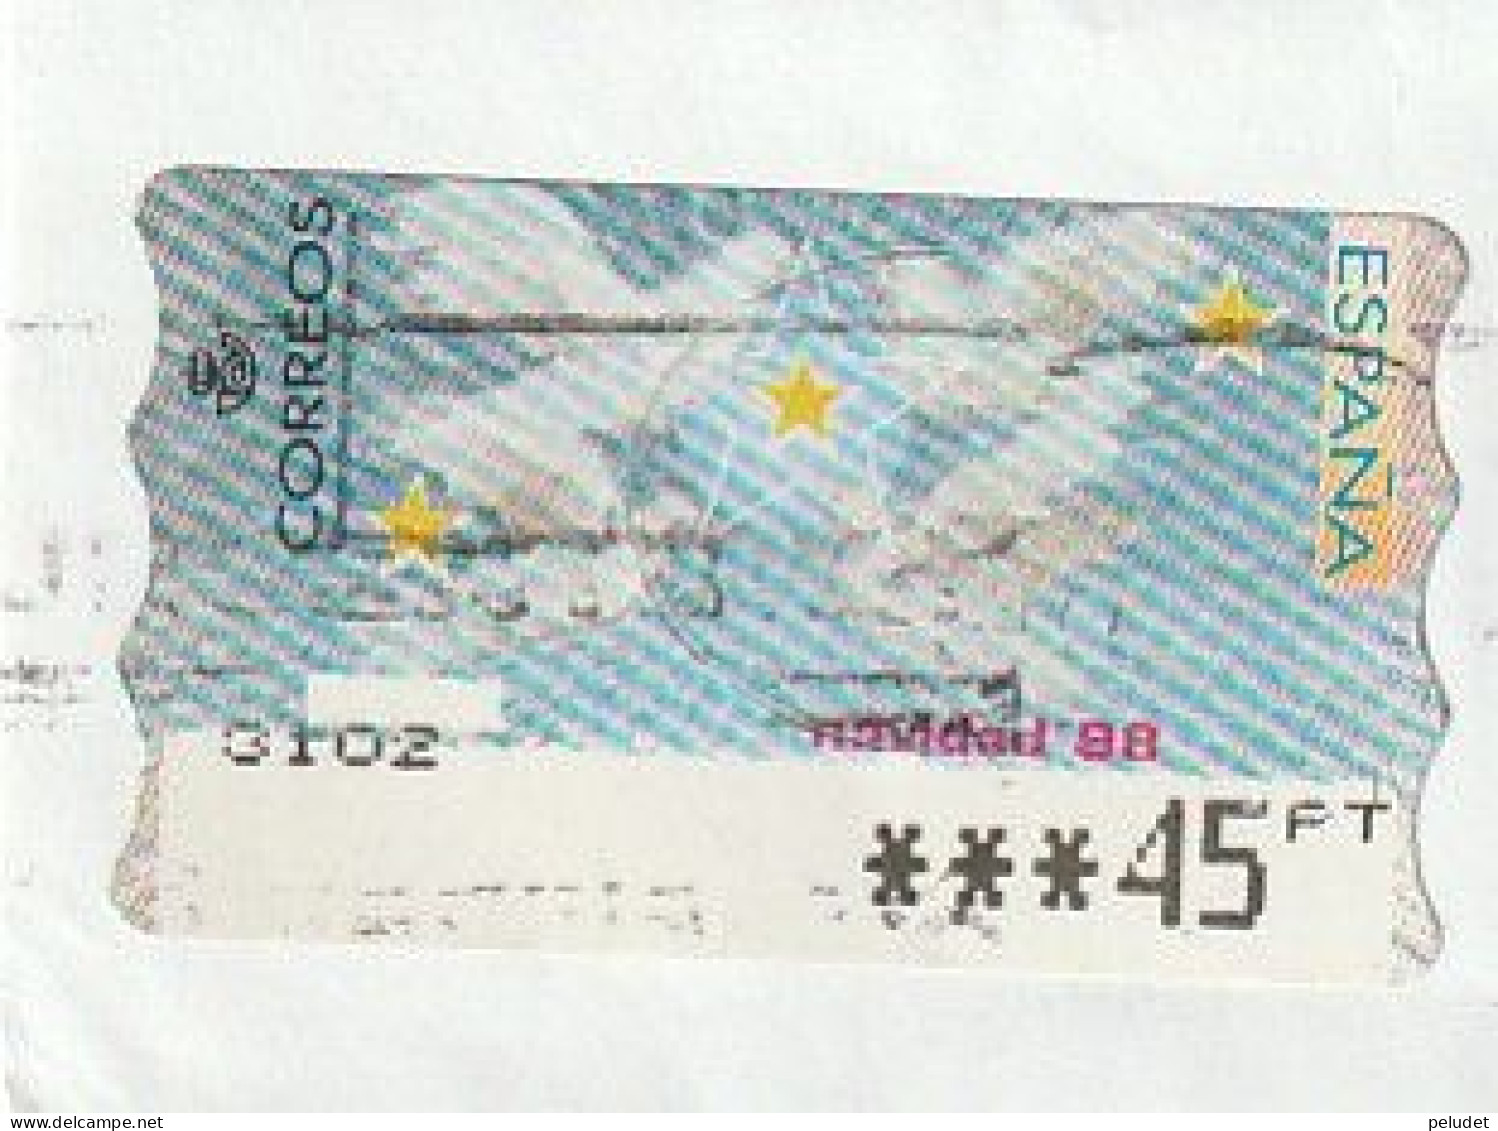 Espagne Spain España - Etiquetas Franqueo / ATM - Christmas '98 - Mi AT25 Yt D19C - Vignette [ATM]